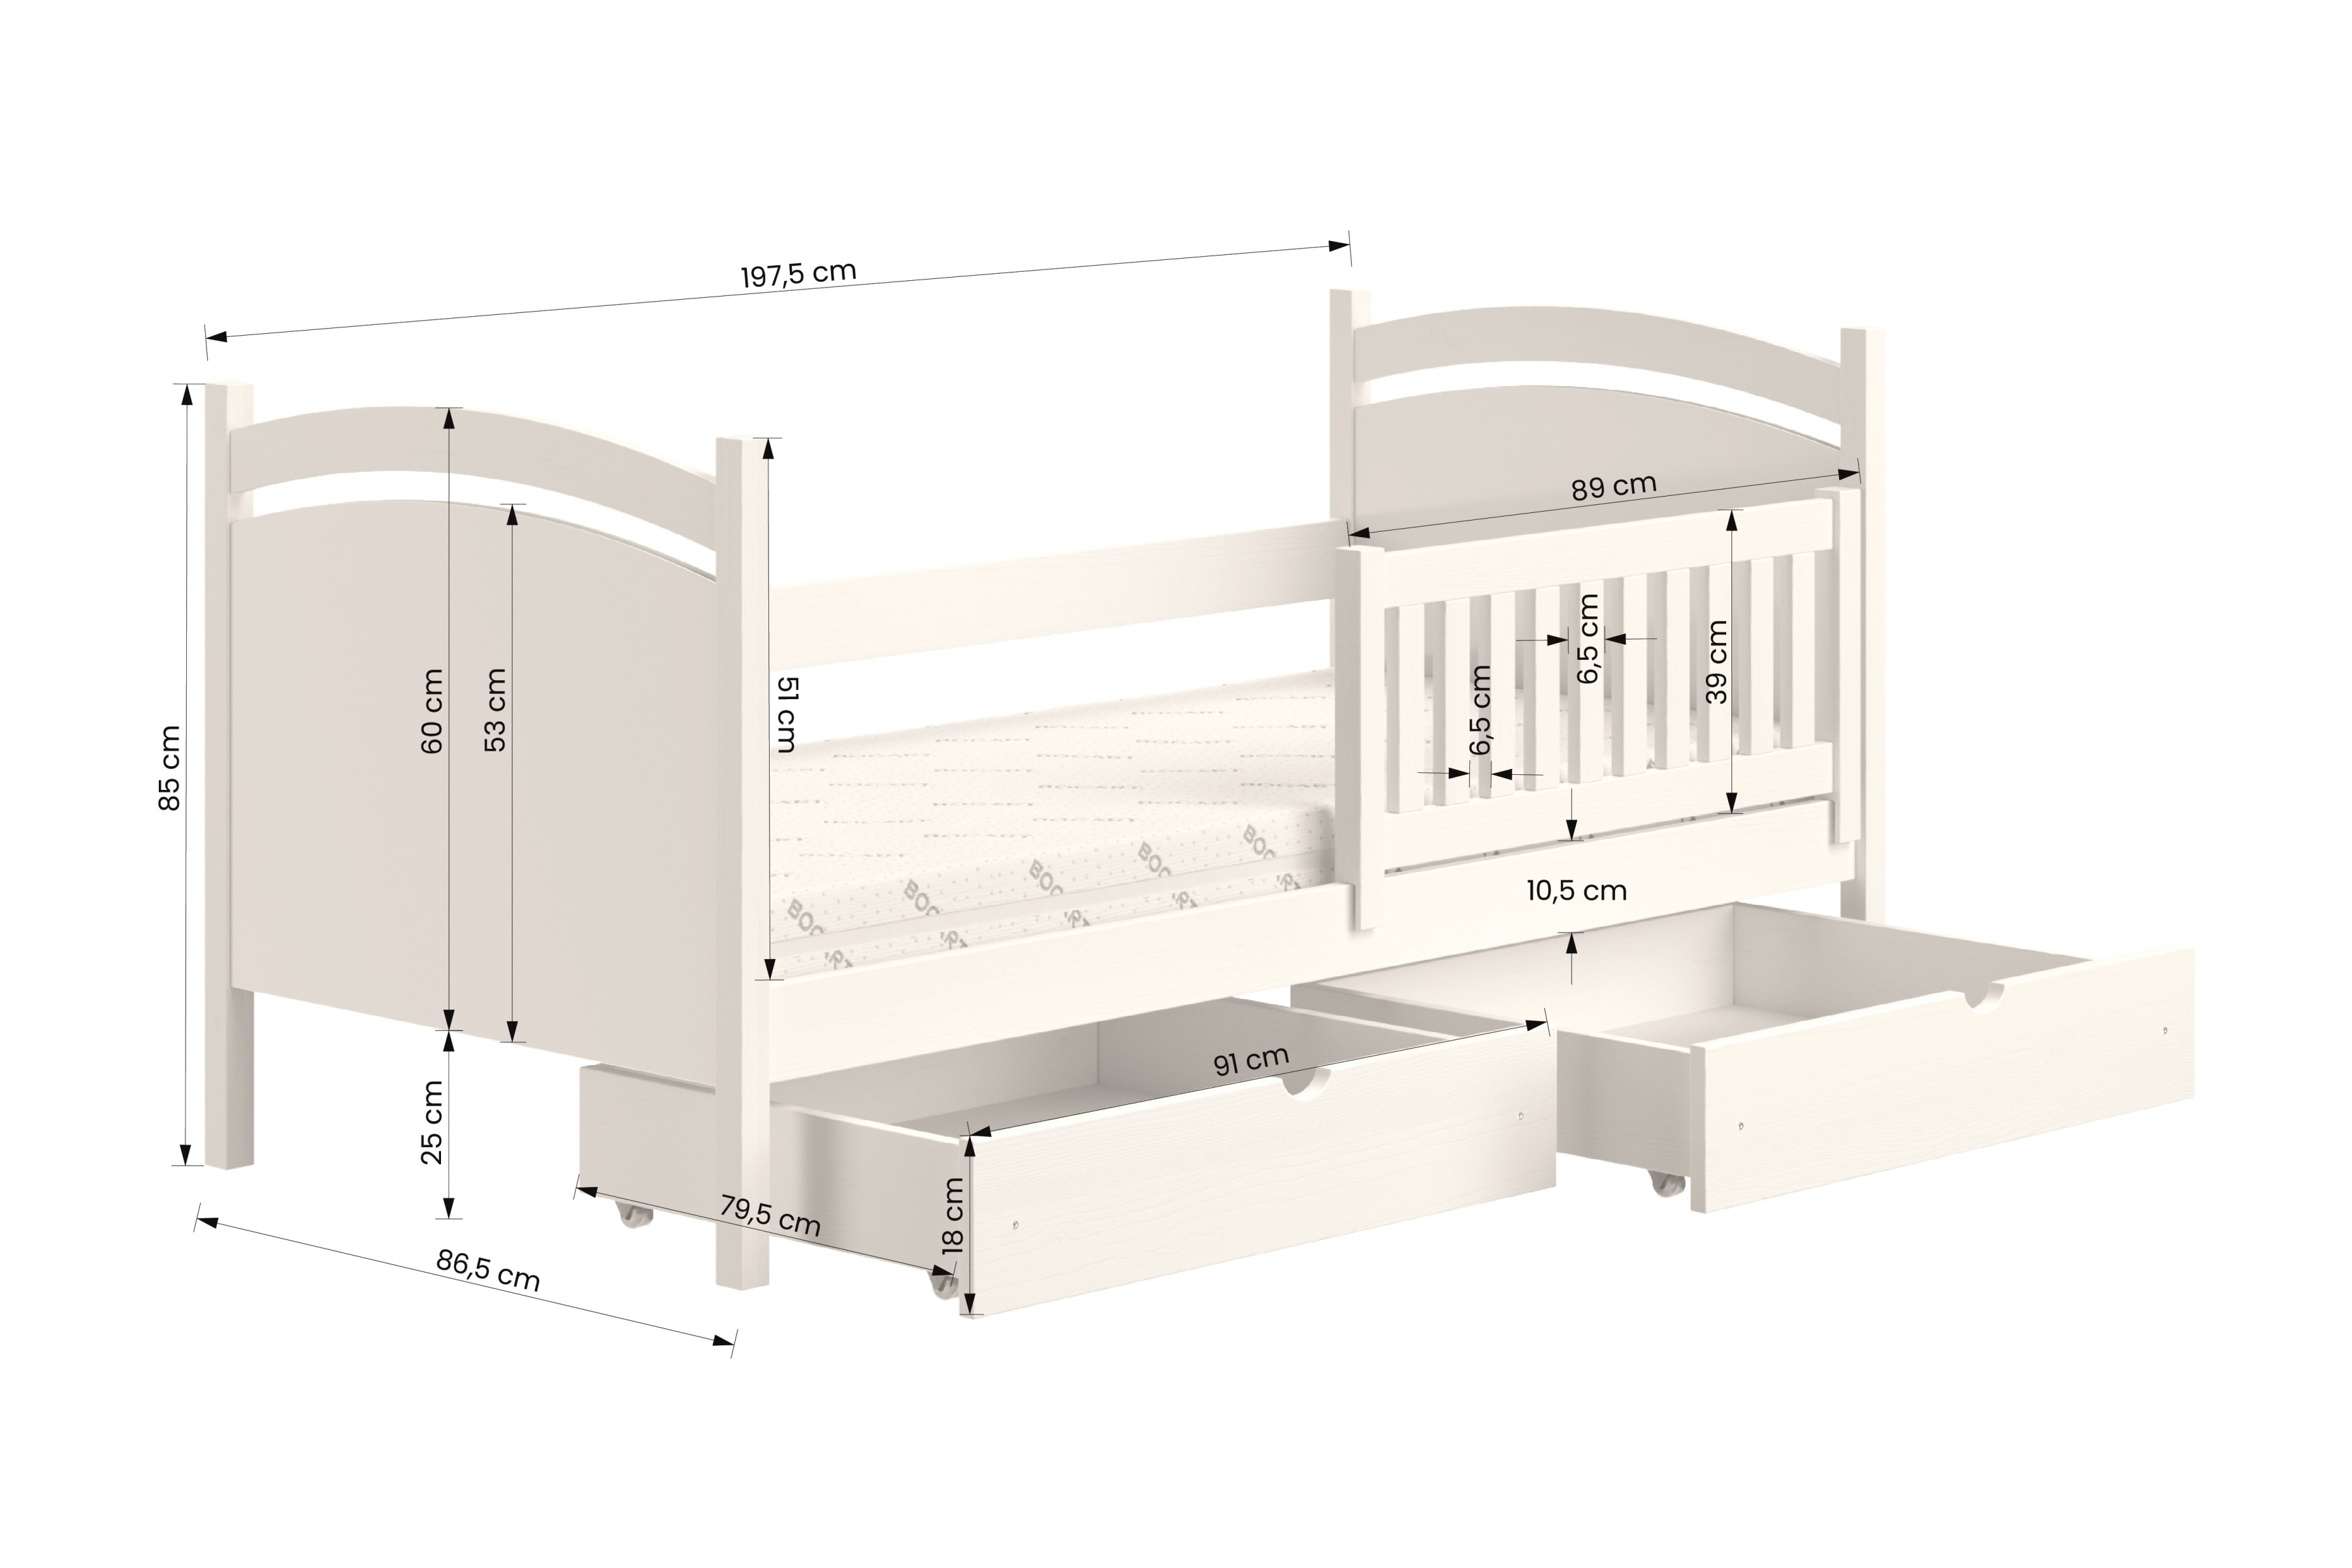 postel dětské s tabulí na suché mazání Amely - Barva šedý, rozměr 80x190 postel dzieciece z tablica suchoscieralna Amely - Rozměry